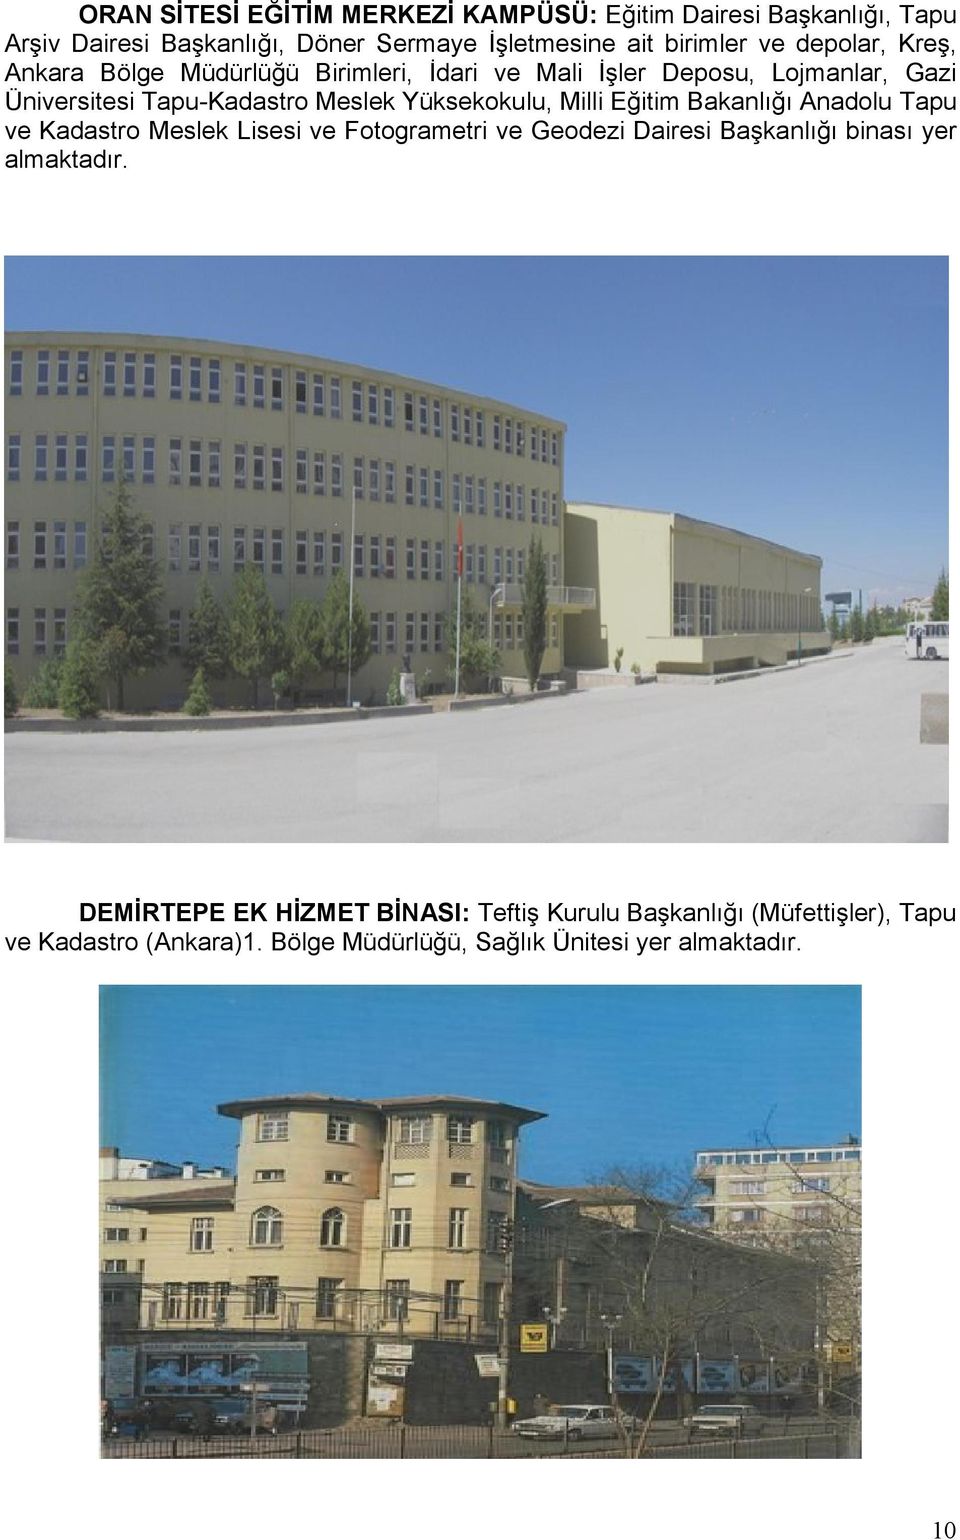 Yüksekokulu, Milli Eğitim Bakanlığı Anadolu Tapu ve Kadastro Meslek Lisesi ve Fotogrametri ve Geodezi Dairesi Başkanlığı binası yer